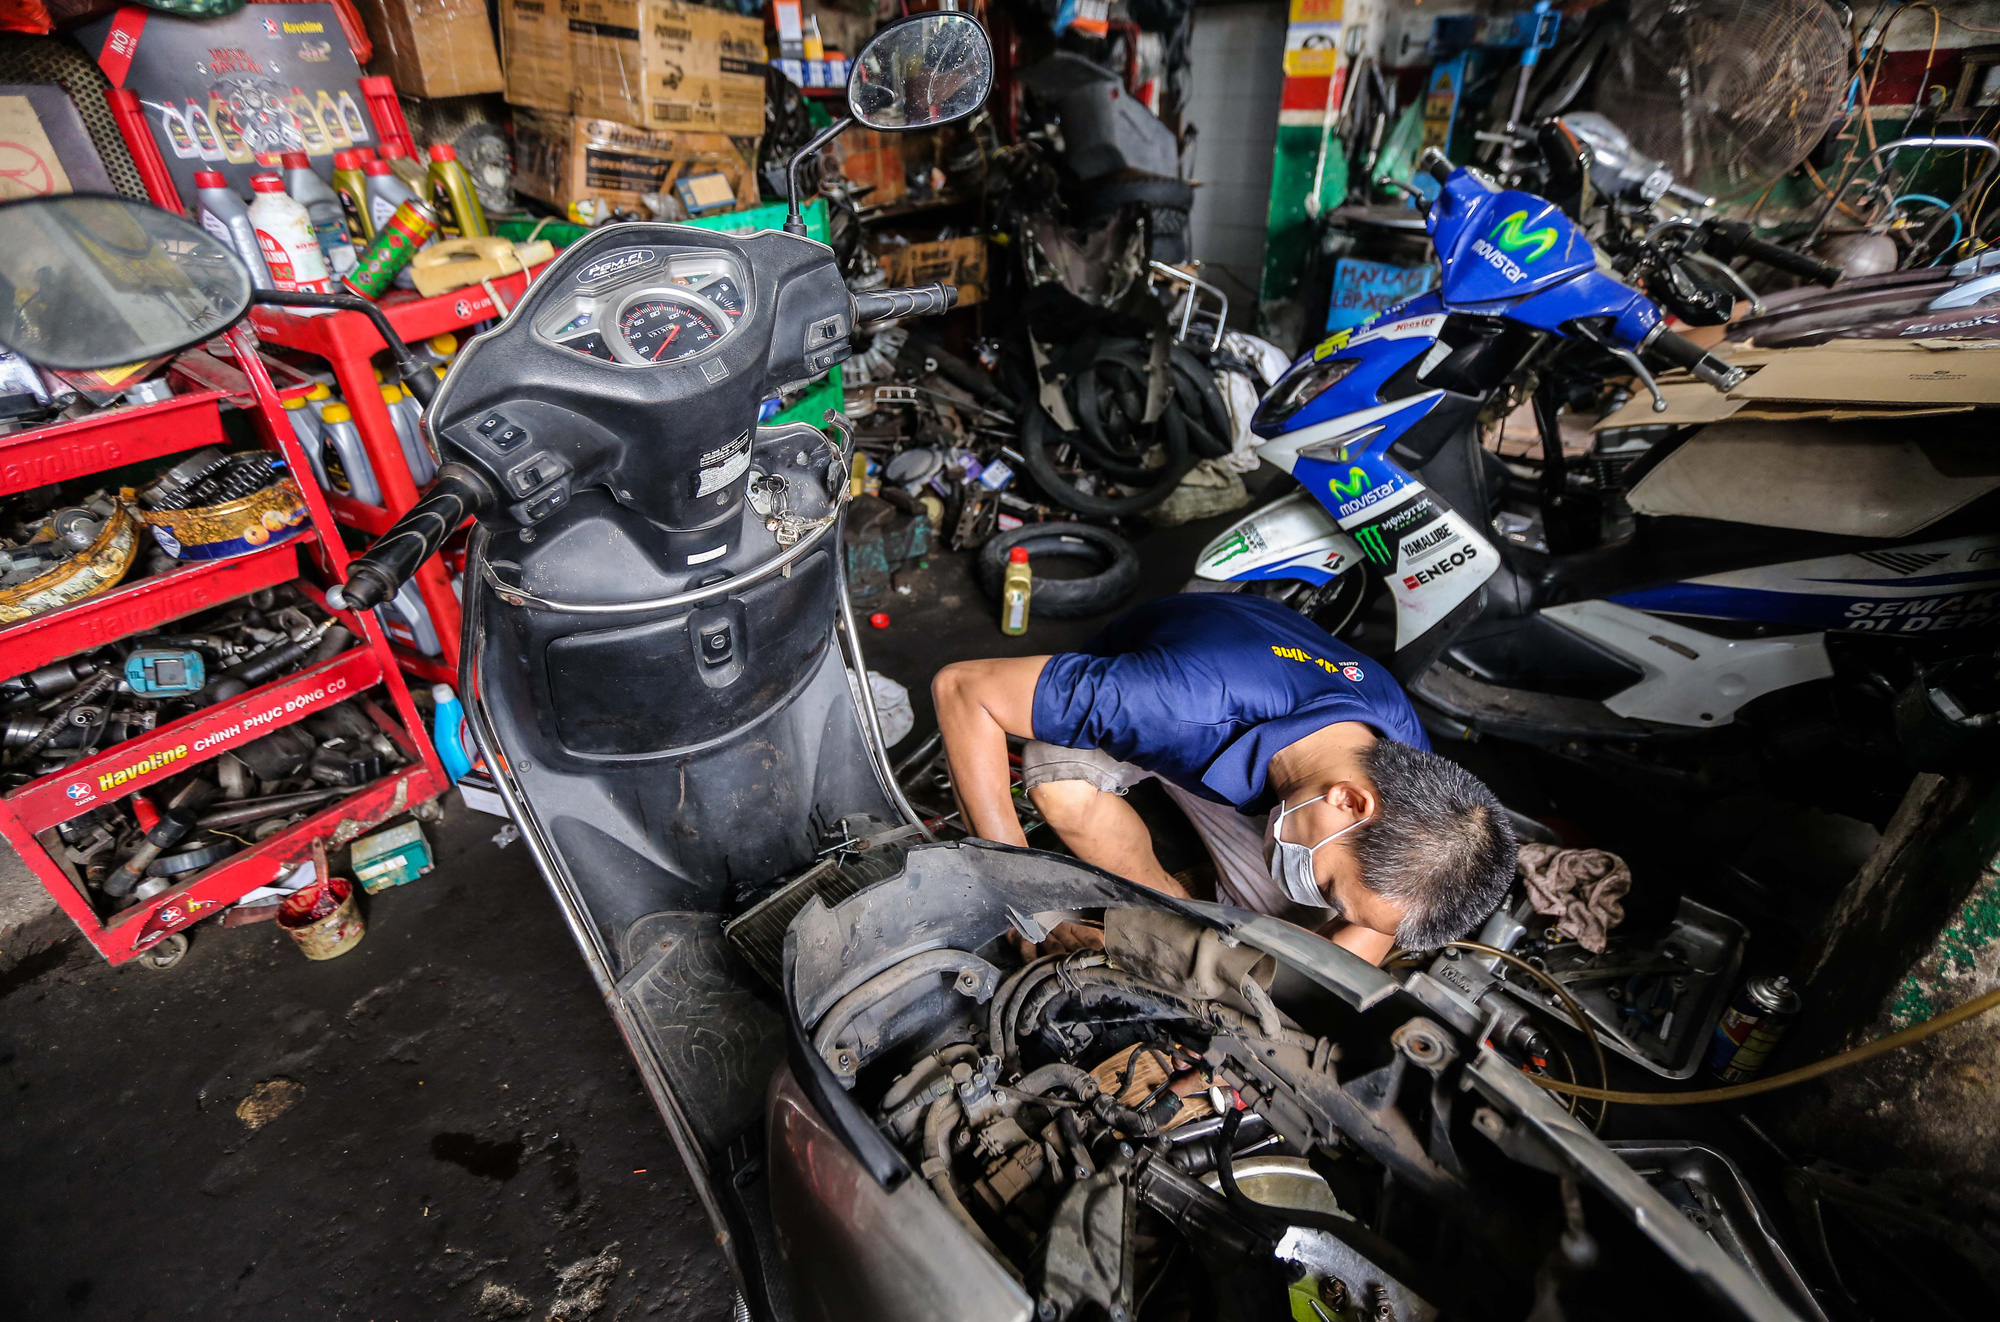 Nếu bạn đang cần sửa chữa chiếc xe máy của mình hoặc tìm kiếm một cửa hàng sửa chữa xe máy tin cậy, hãy xem ảnh về dịch vụ sửa xe máy của chúng tôi với đội ngũ kỹ thuật viên có kinh nghiệm và trang thiết bị máy móc hiện đại.